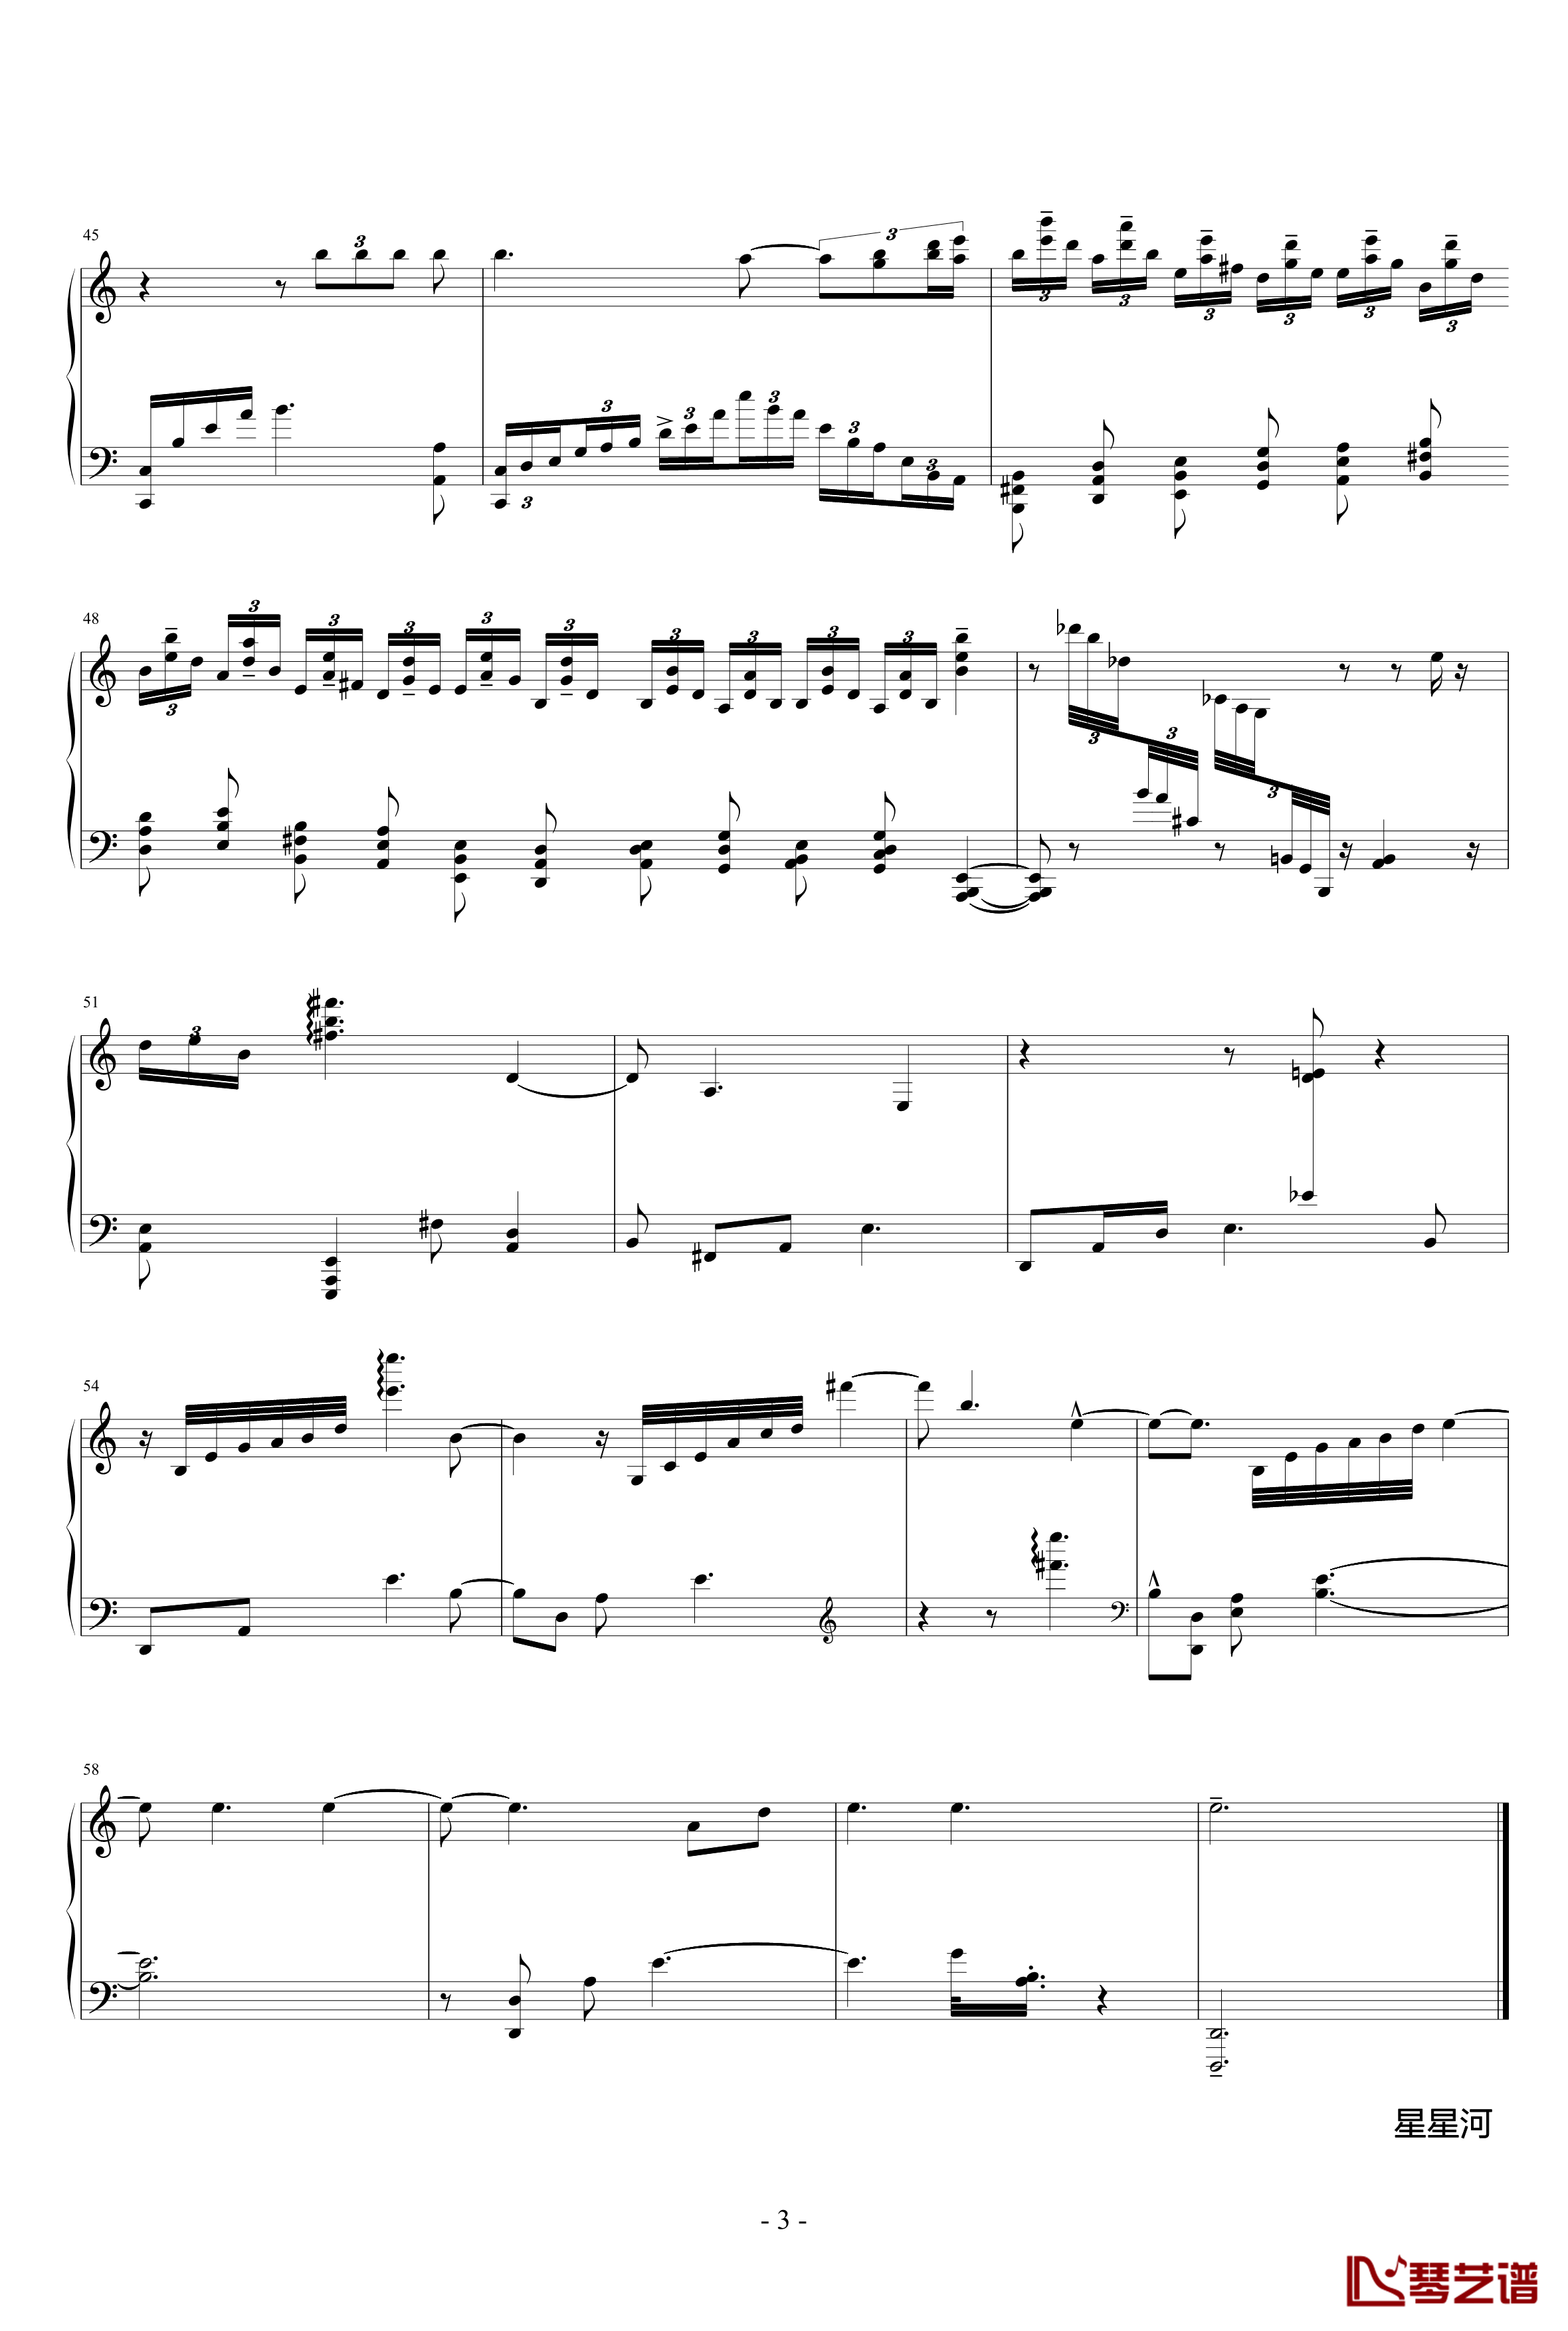 冥想集钢琴谱-修改-升c小调17